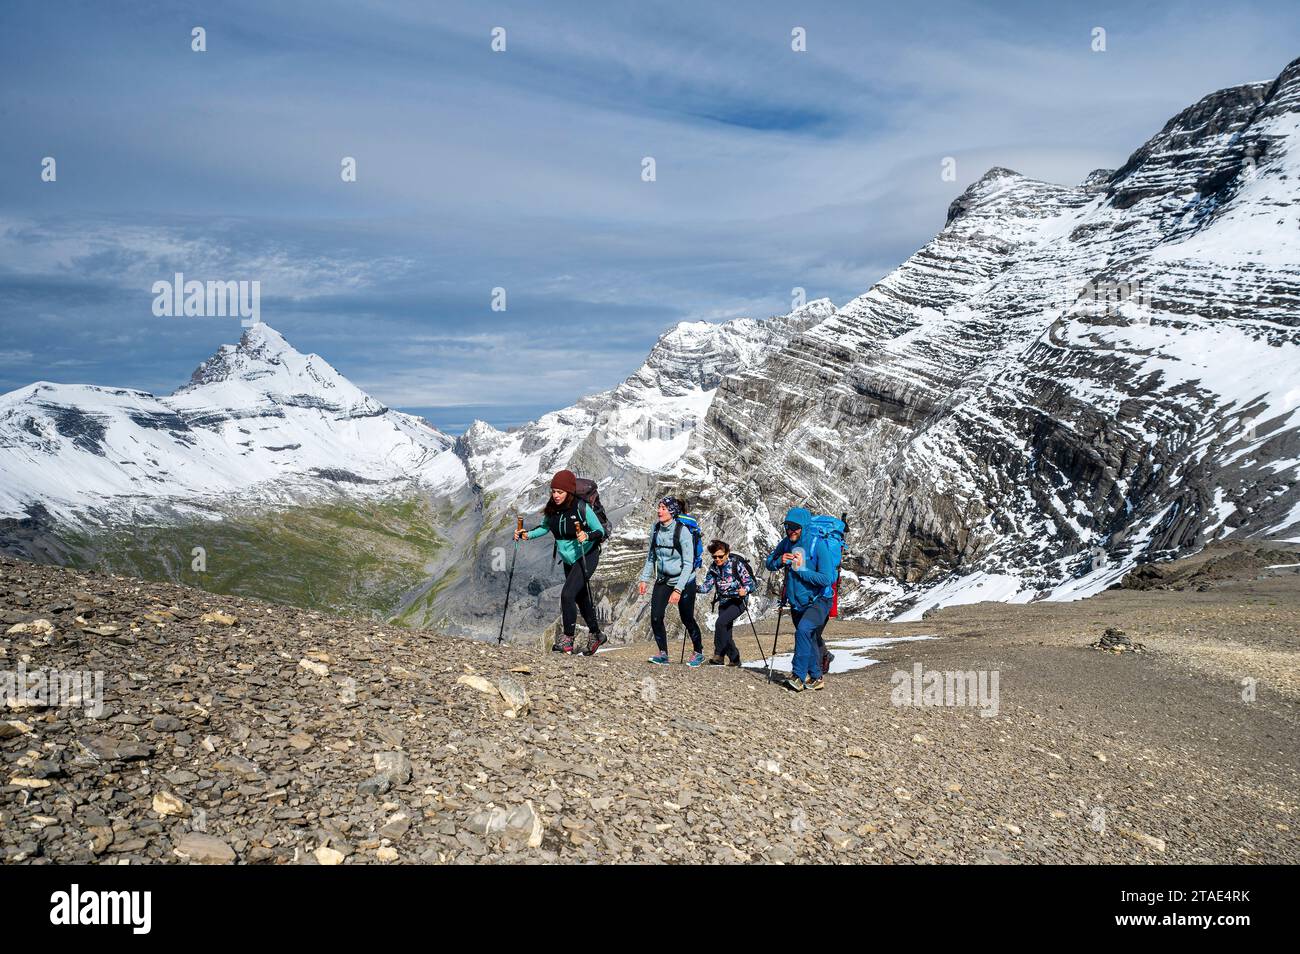 Suisse, Valais, Champéry, Tour des dents blanches, randonneurs marchant vers le Col des Ottans, avec la haute cime (3257m) en arrière-plan à gauche et la Tour Sallière (3218m) en arrière-plan à droite Banque D'Images